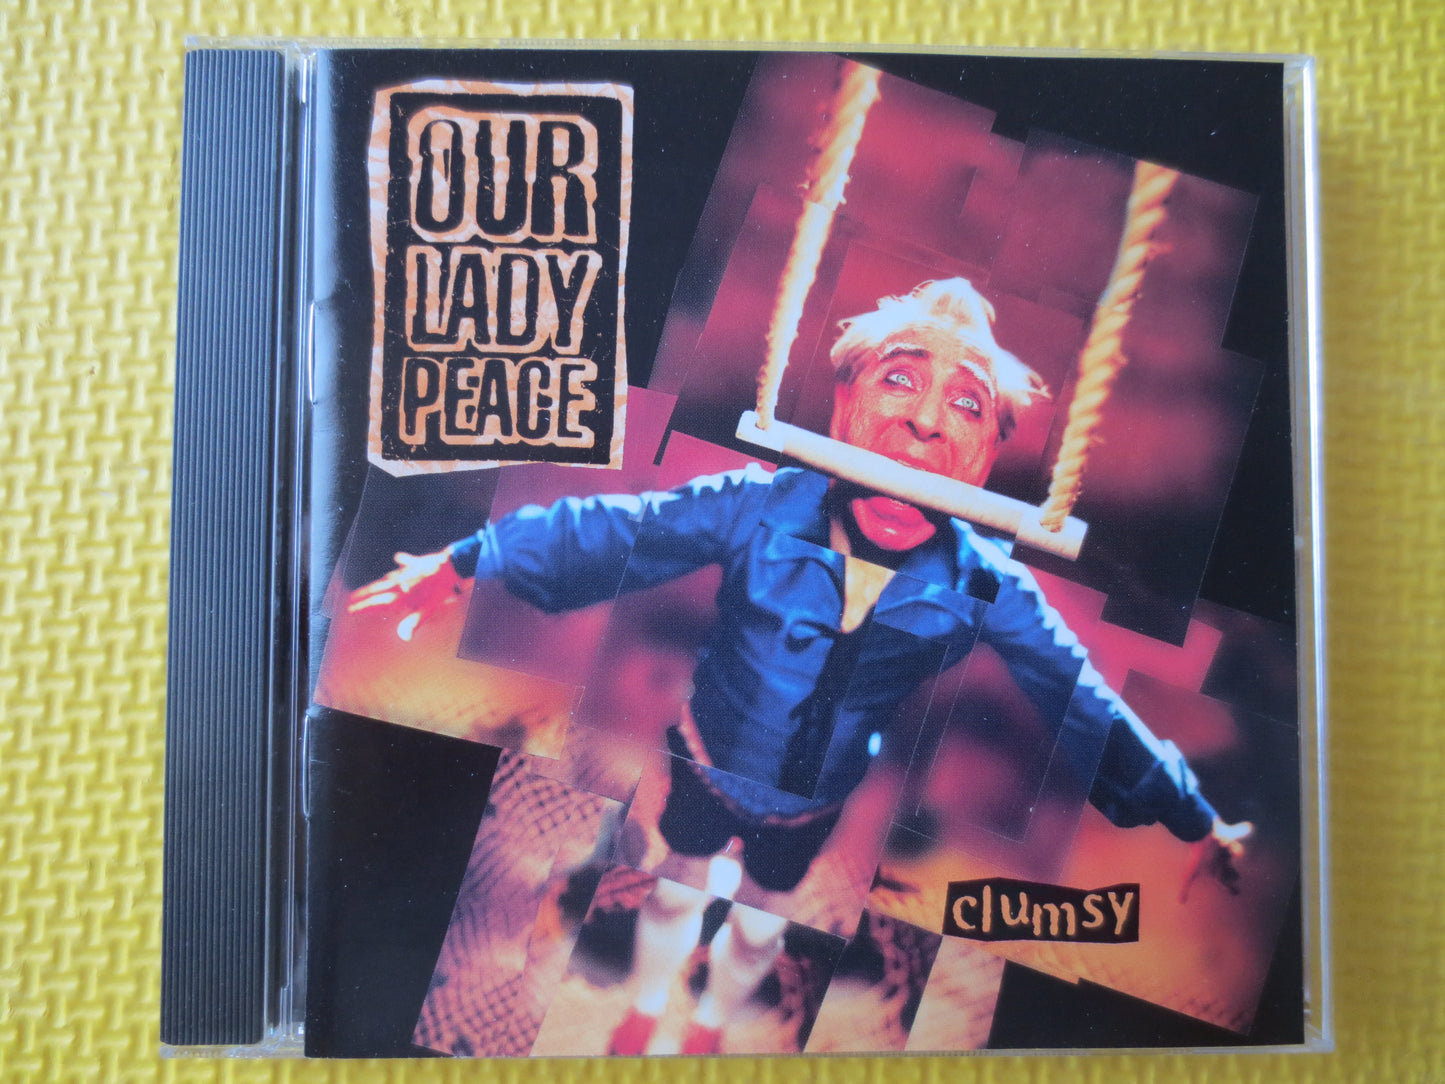 OUR LADY PEACE, Clumsy, Our Lady Peace Cd, Our Lady Peace Album, Music Cds, Rock Music cd, Rock Cd, Pop Cds, 1997 Compact Disc